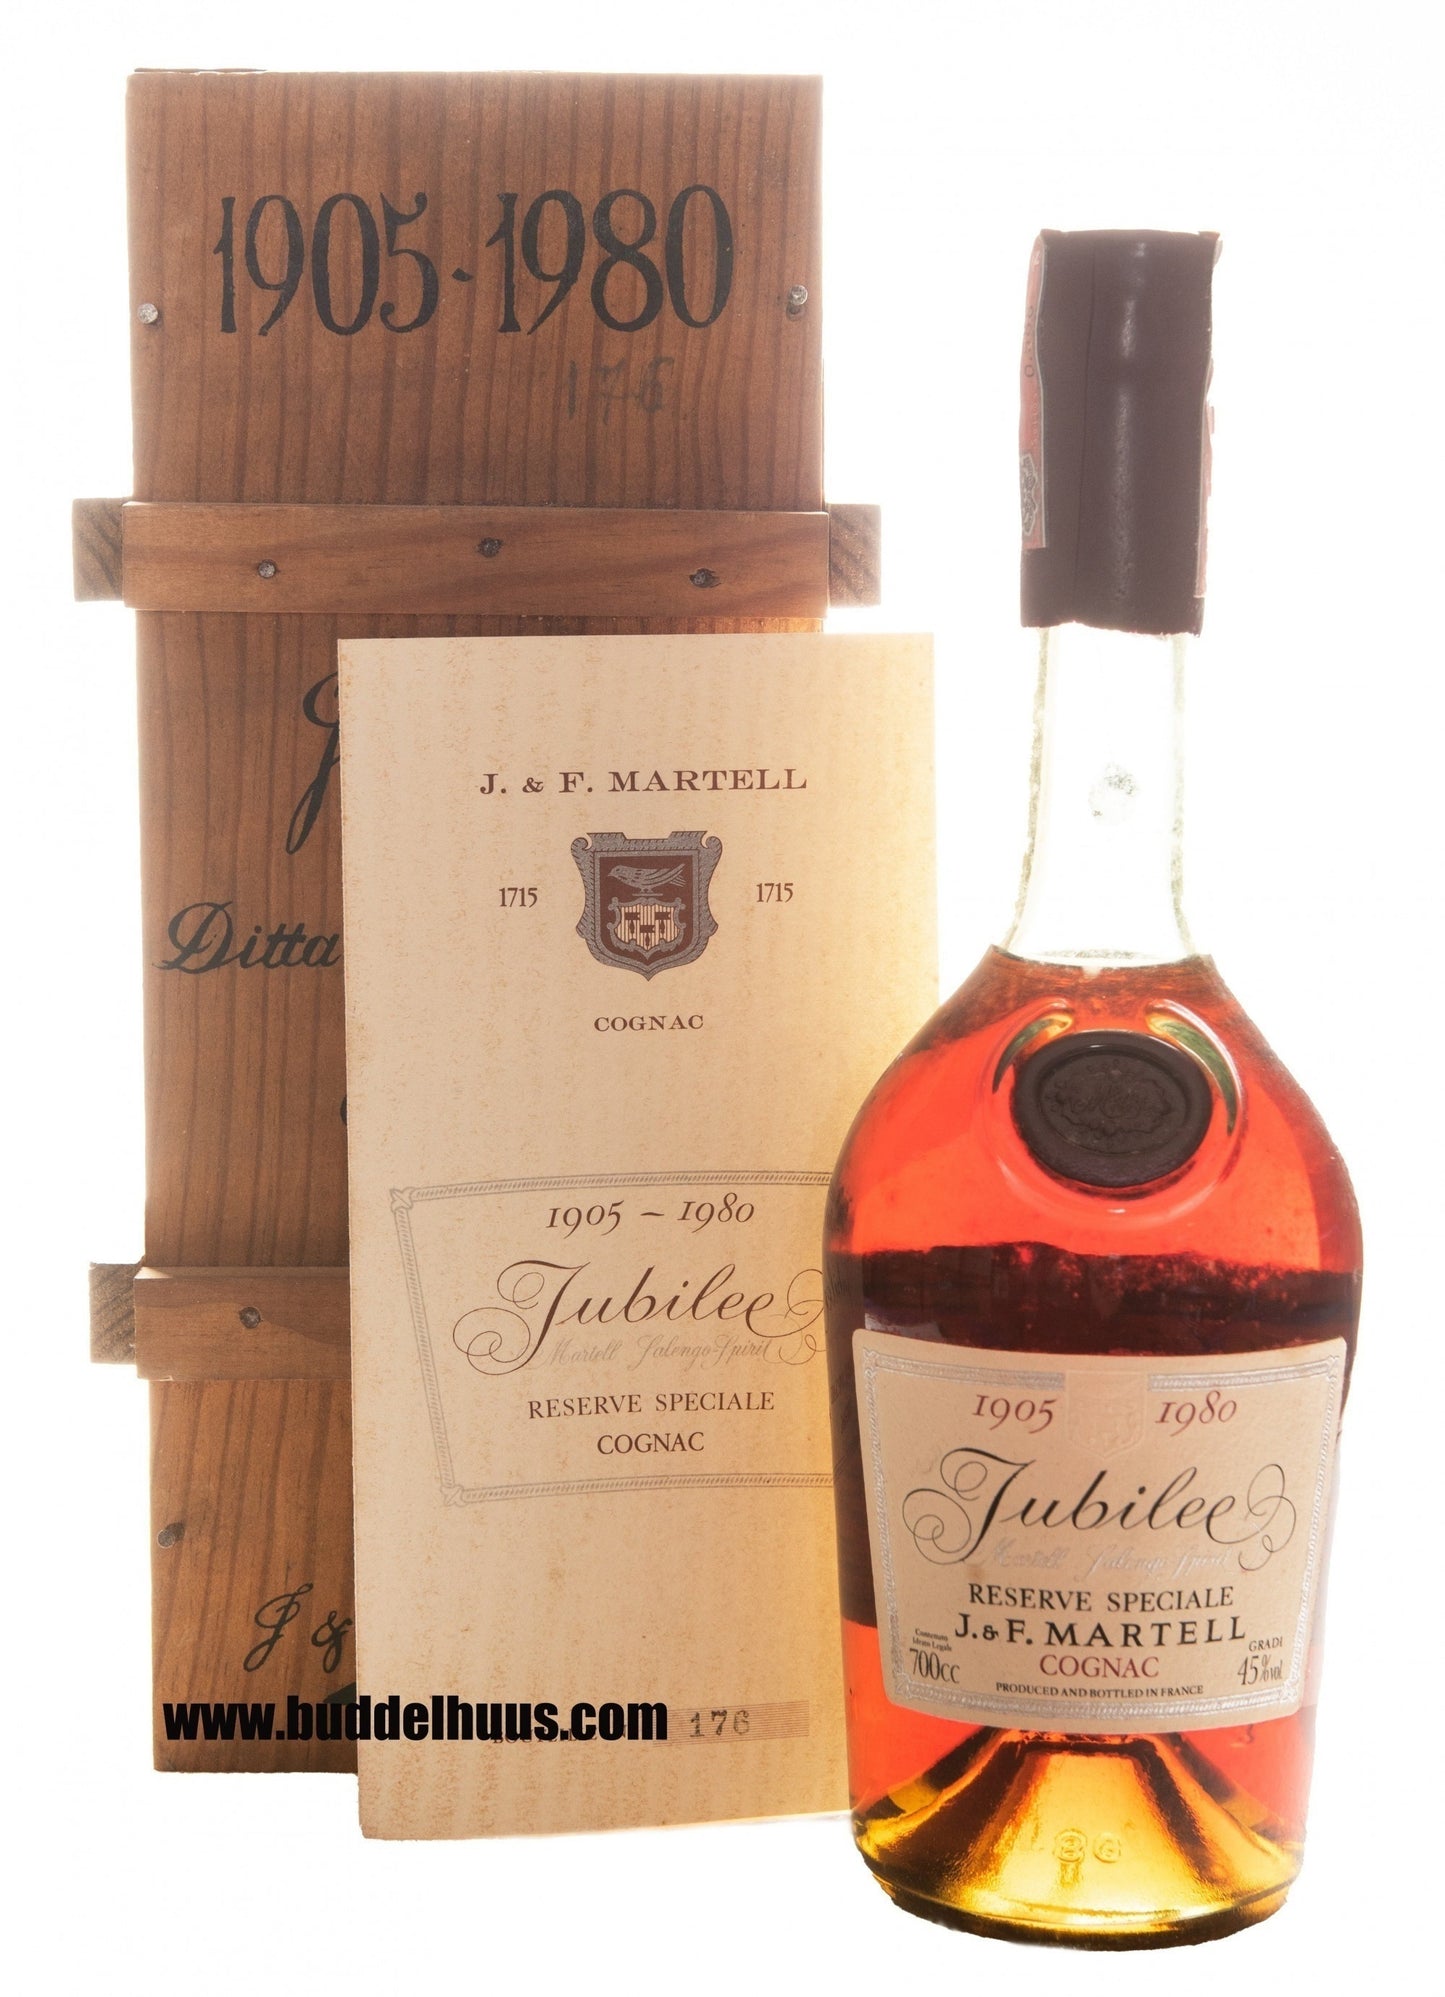 Martell 1905-1980 Jubilee Cognac